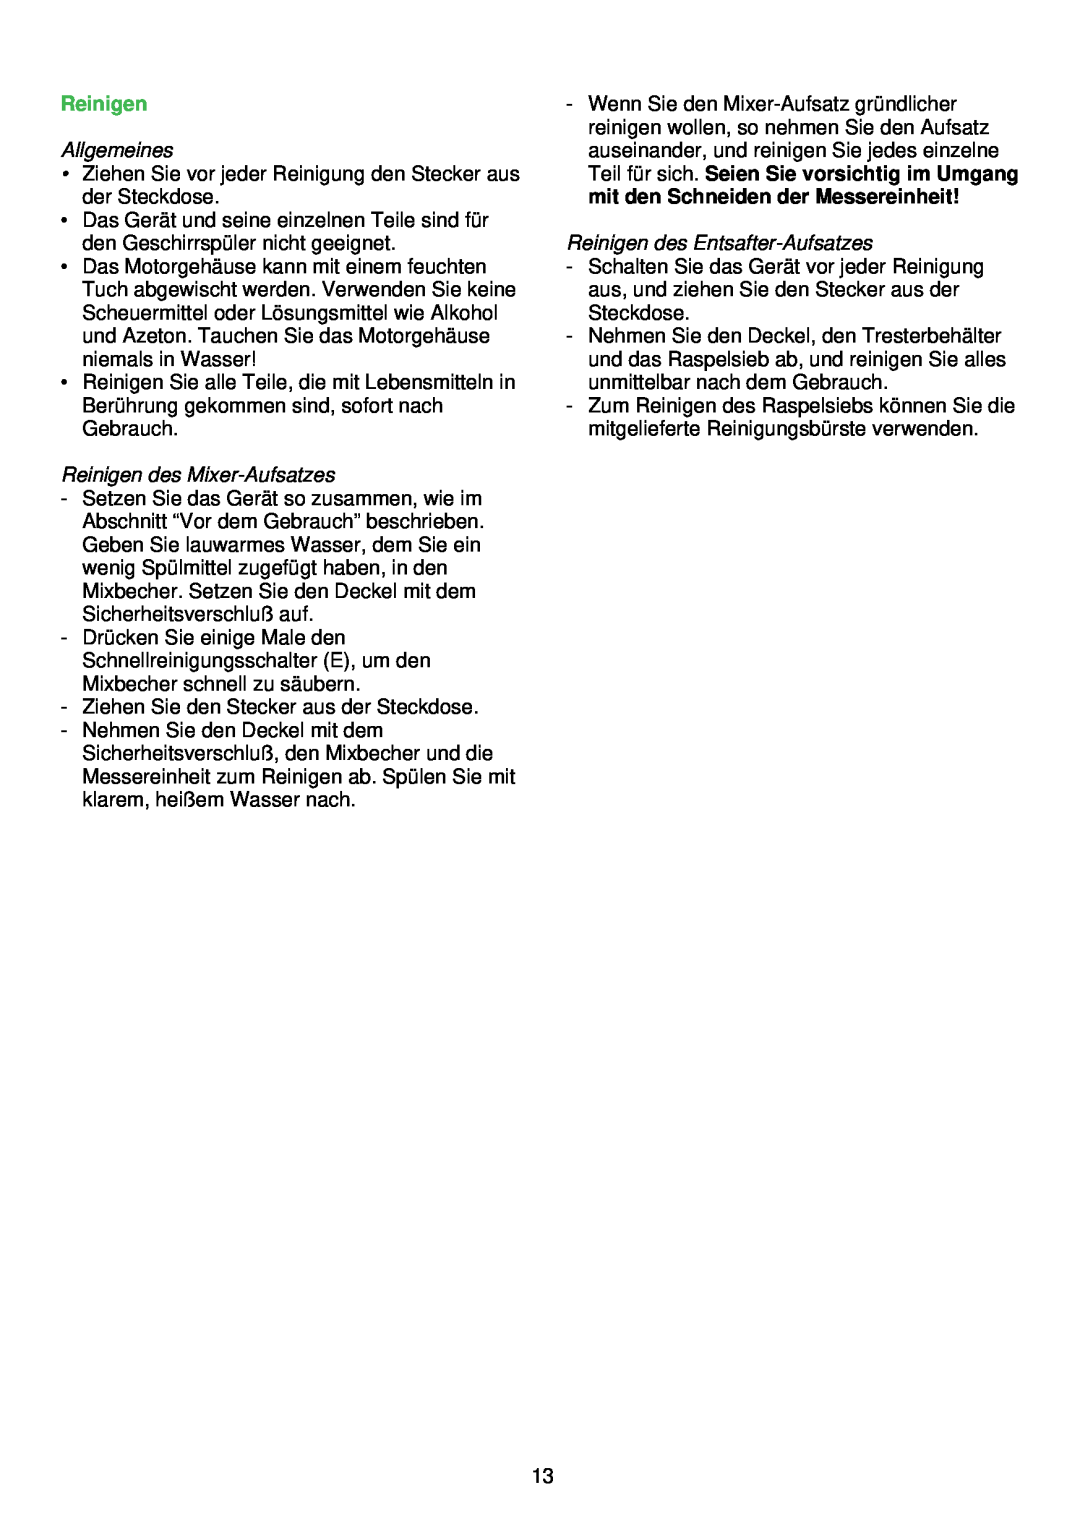 Philips HR1842, HR1843, HR1841, HR1840 manual Reinigen des Mixer-Aufsatzes, Reinigen des Entsafter-Aufsatzes, Allgemeines 